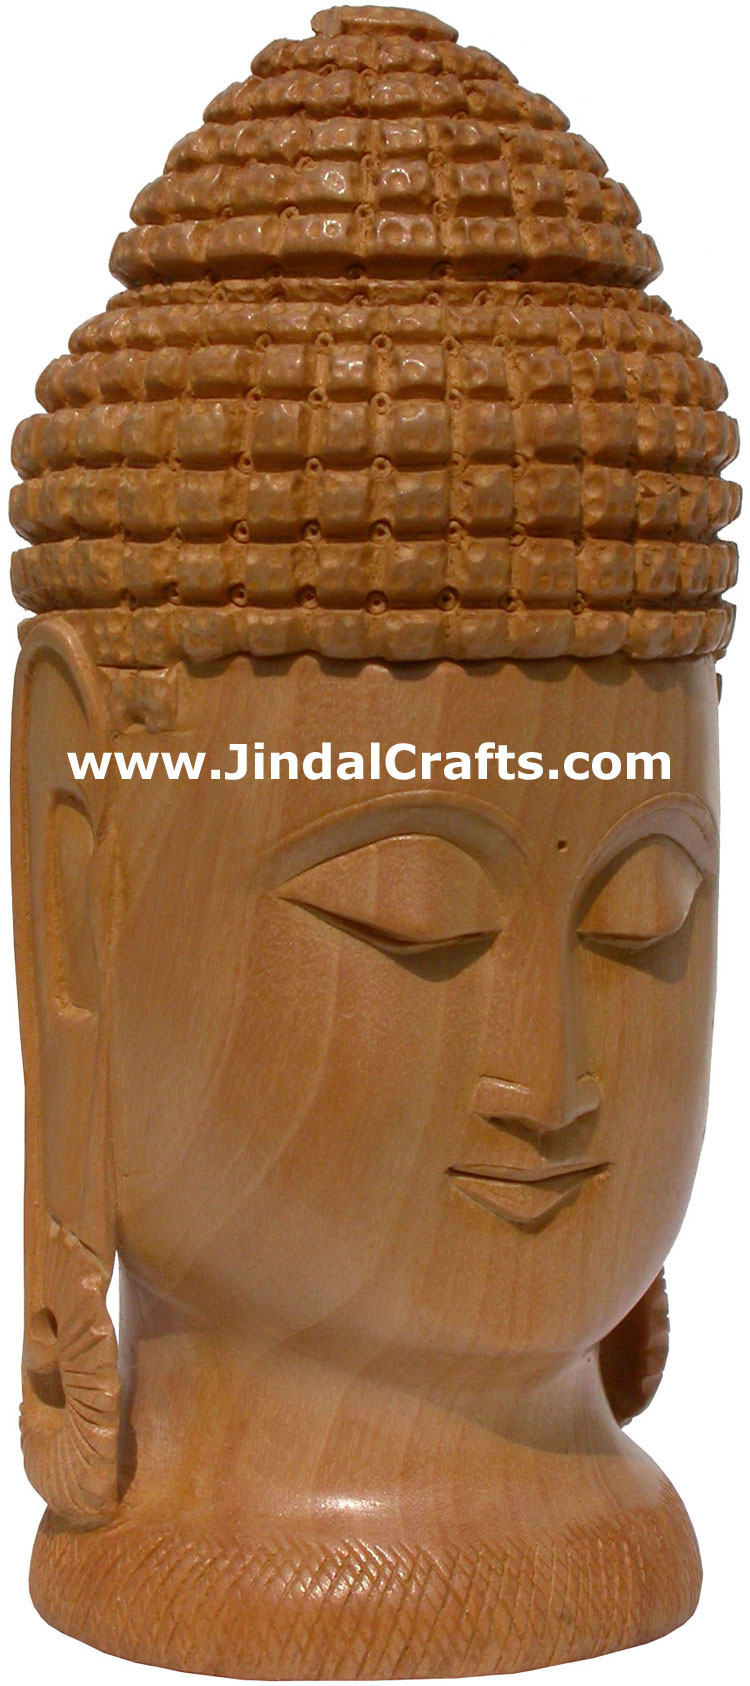 Hand Carved Wooden Gautam Buddha Head Figure India Tibetan Sculpture Statue Art